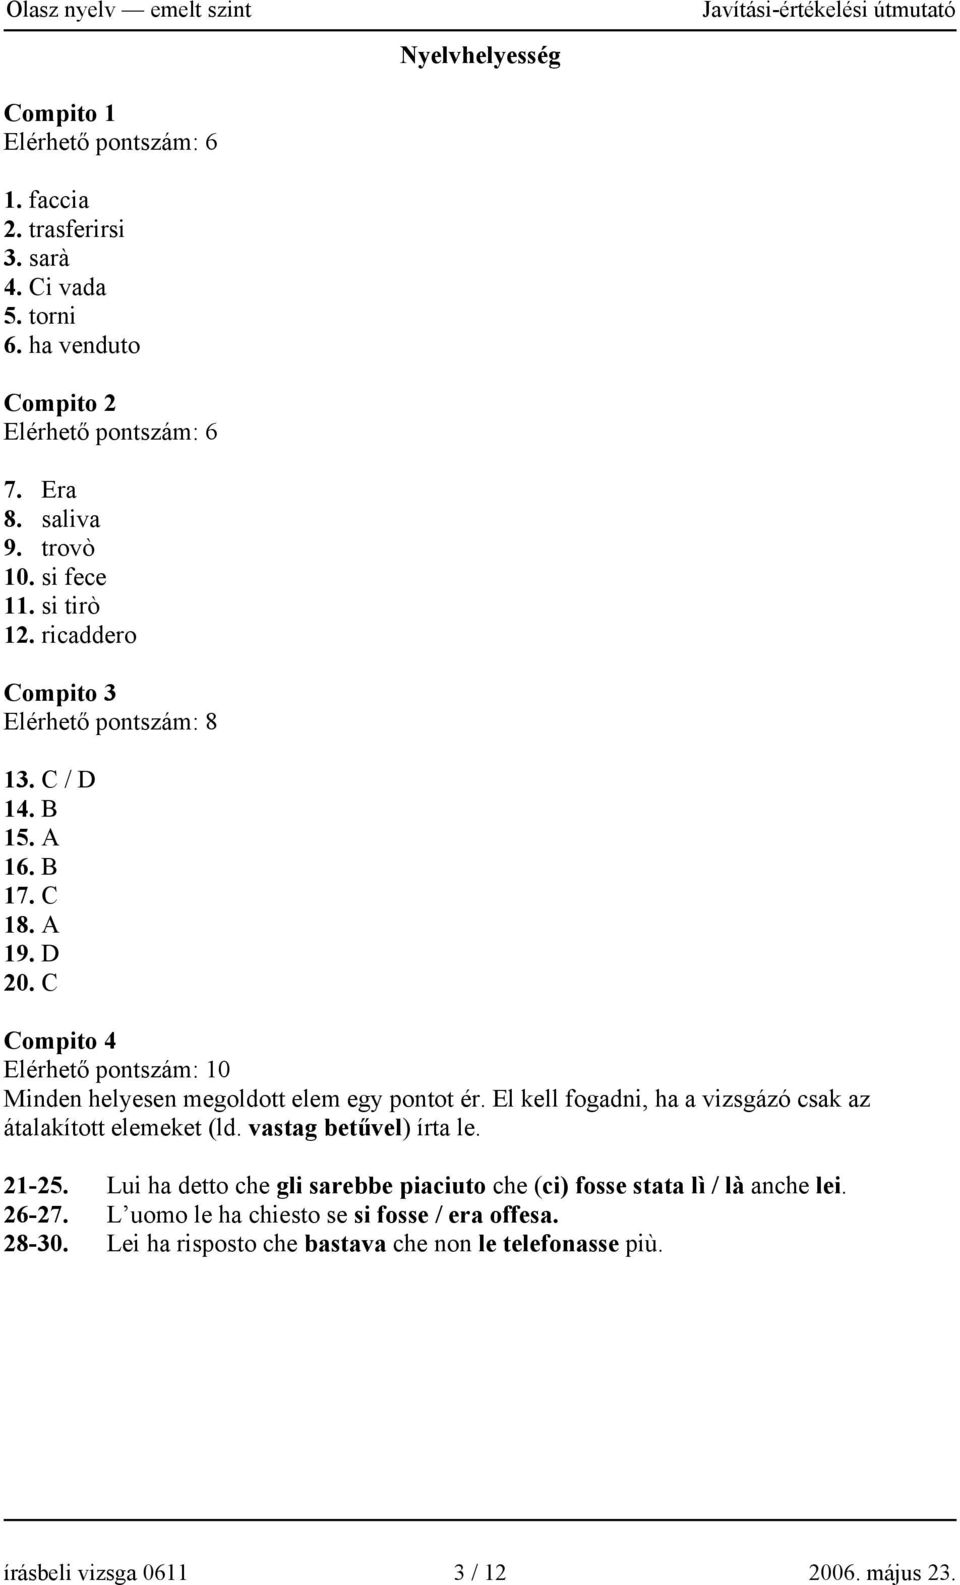 C Nyelvhelyesség Compito 4 Elérhető pontszám: 10 Minden helyesen megoldott elem egy pontot ér. El kell fogadni, ha a vizsgázó csak az átalakított elemeket (ld.